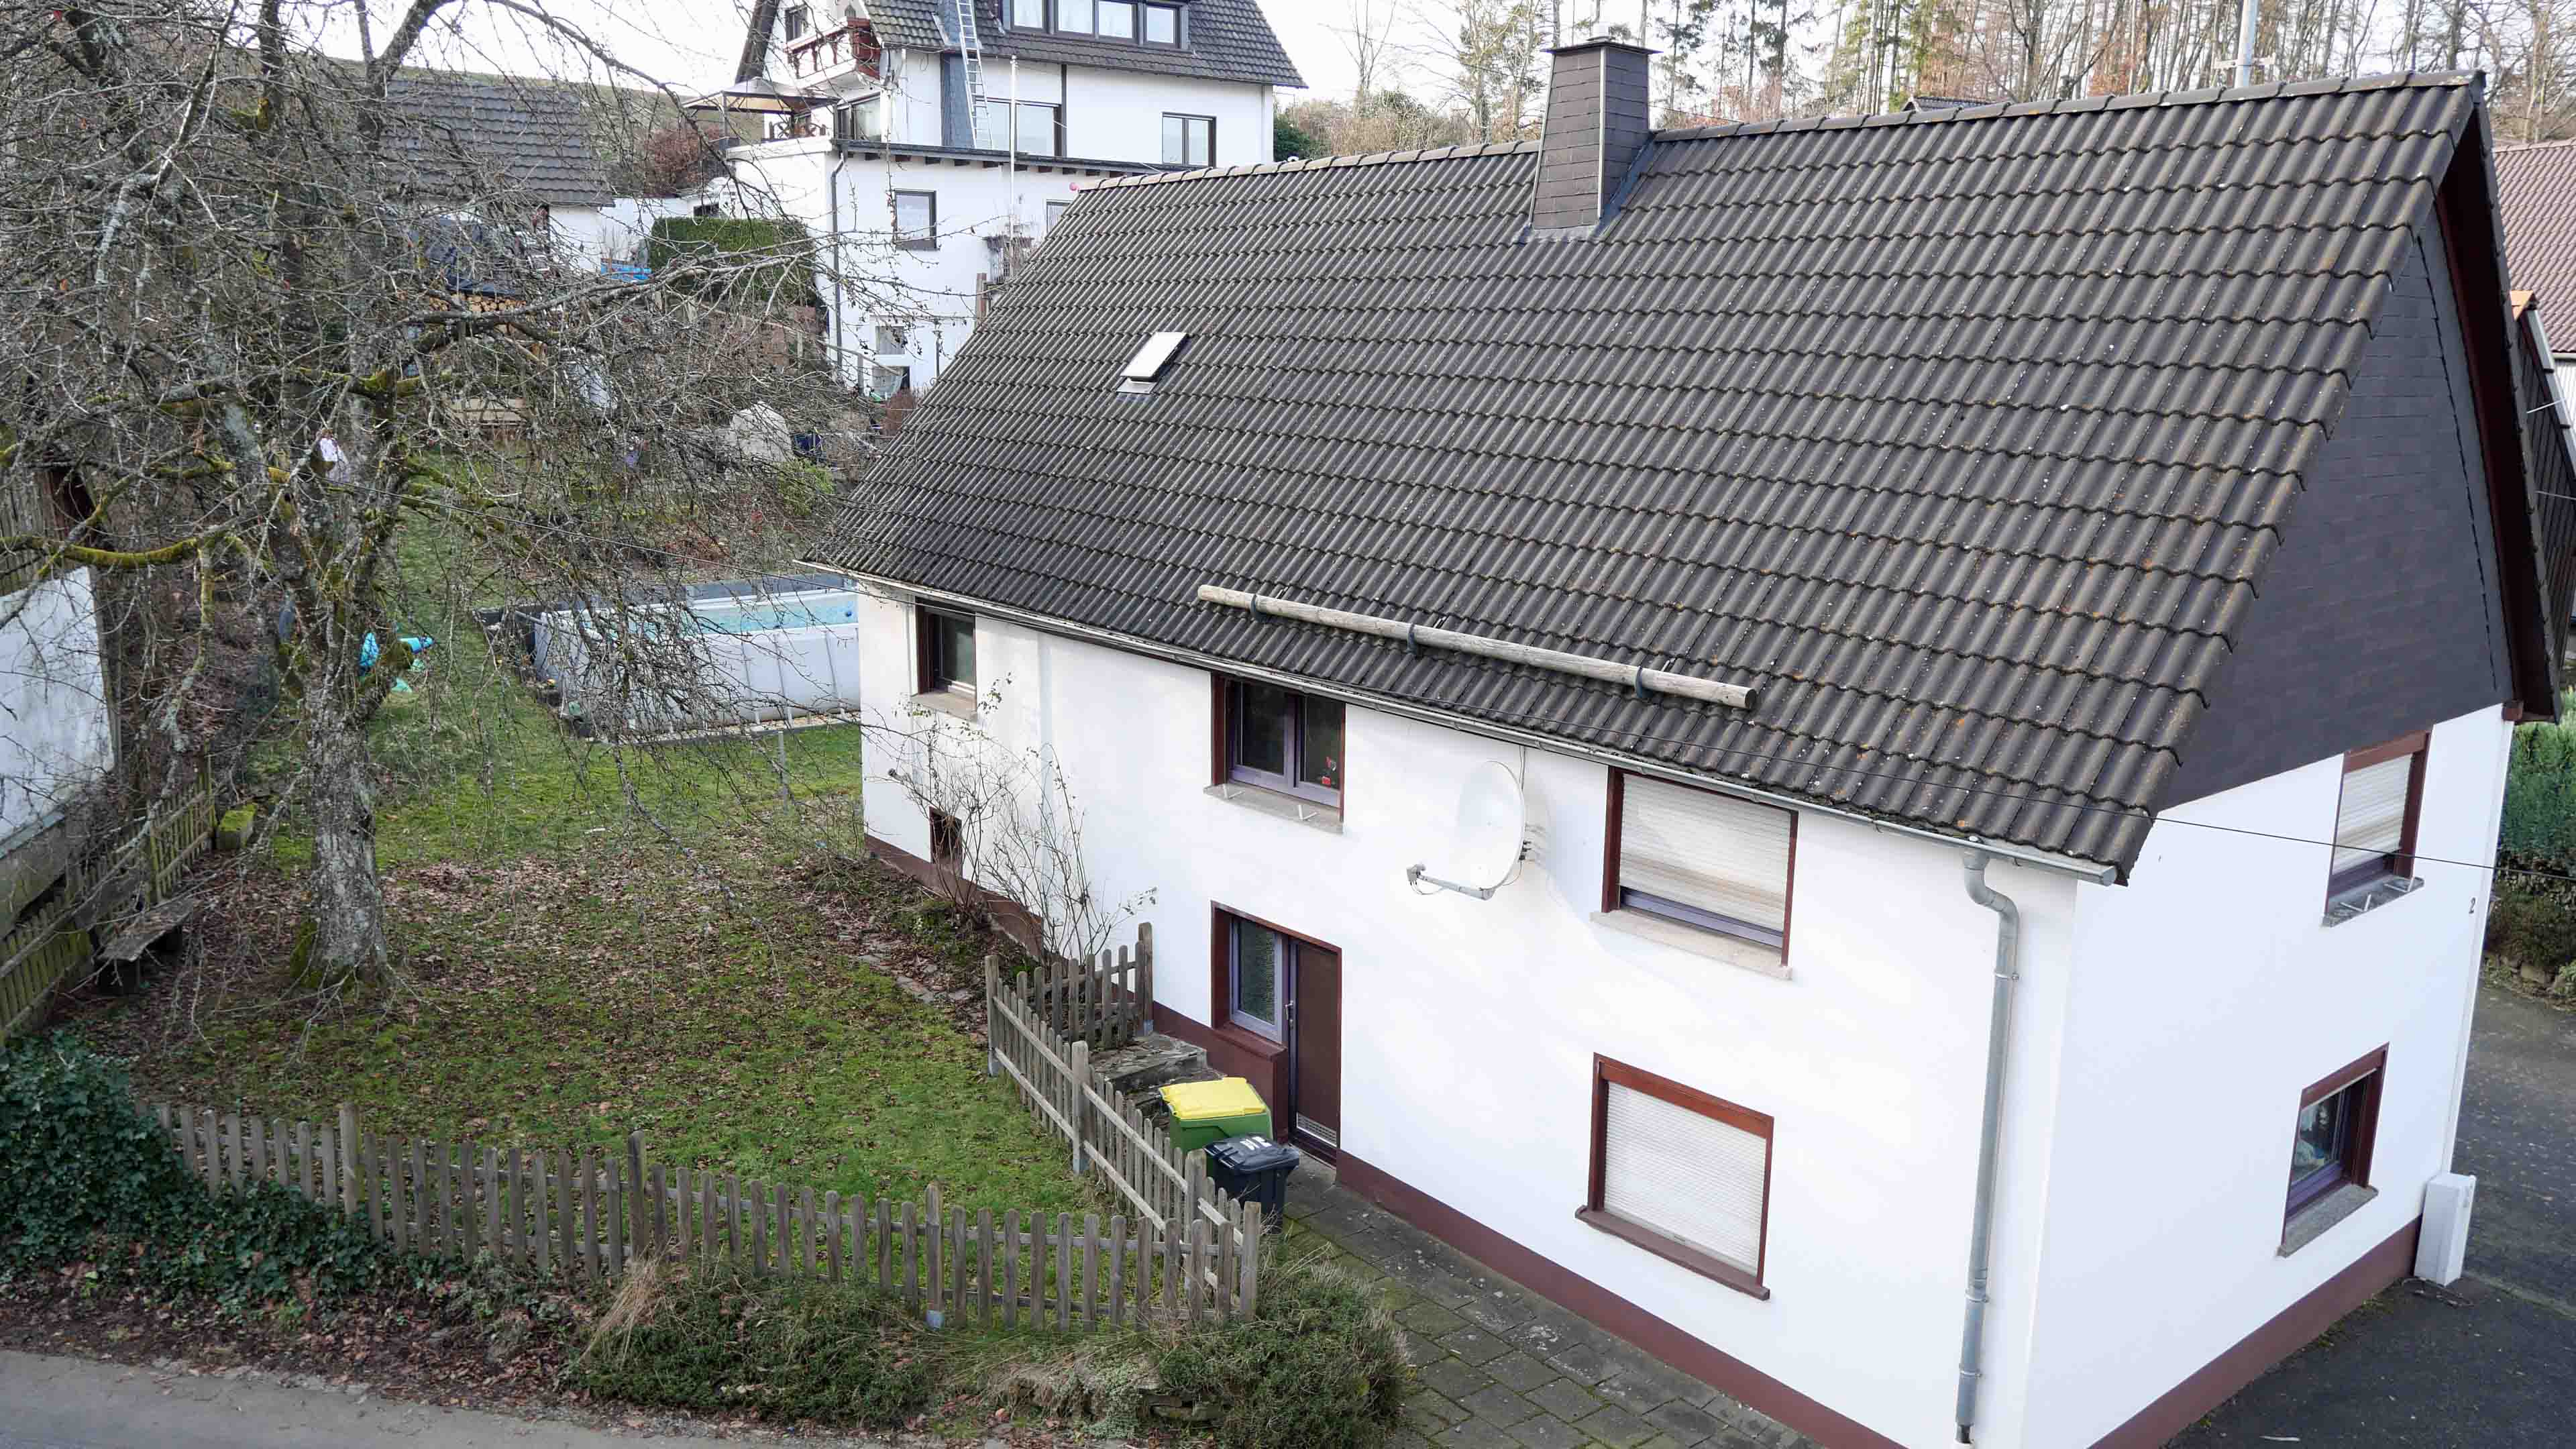 Reichshof-Wildberg: Preiswertes Wohnen im Fachwerkhaus, Das Dach ist komplett modernisiert